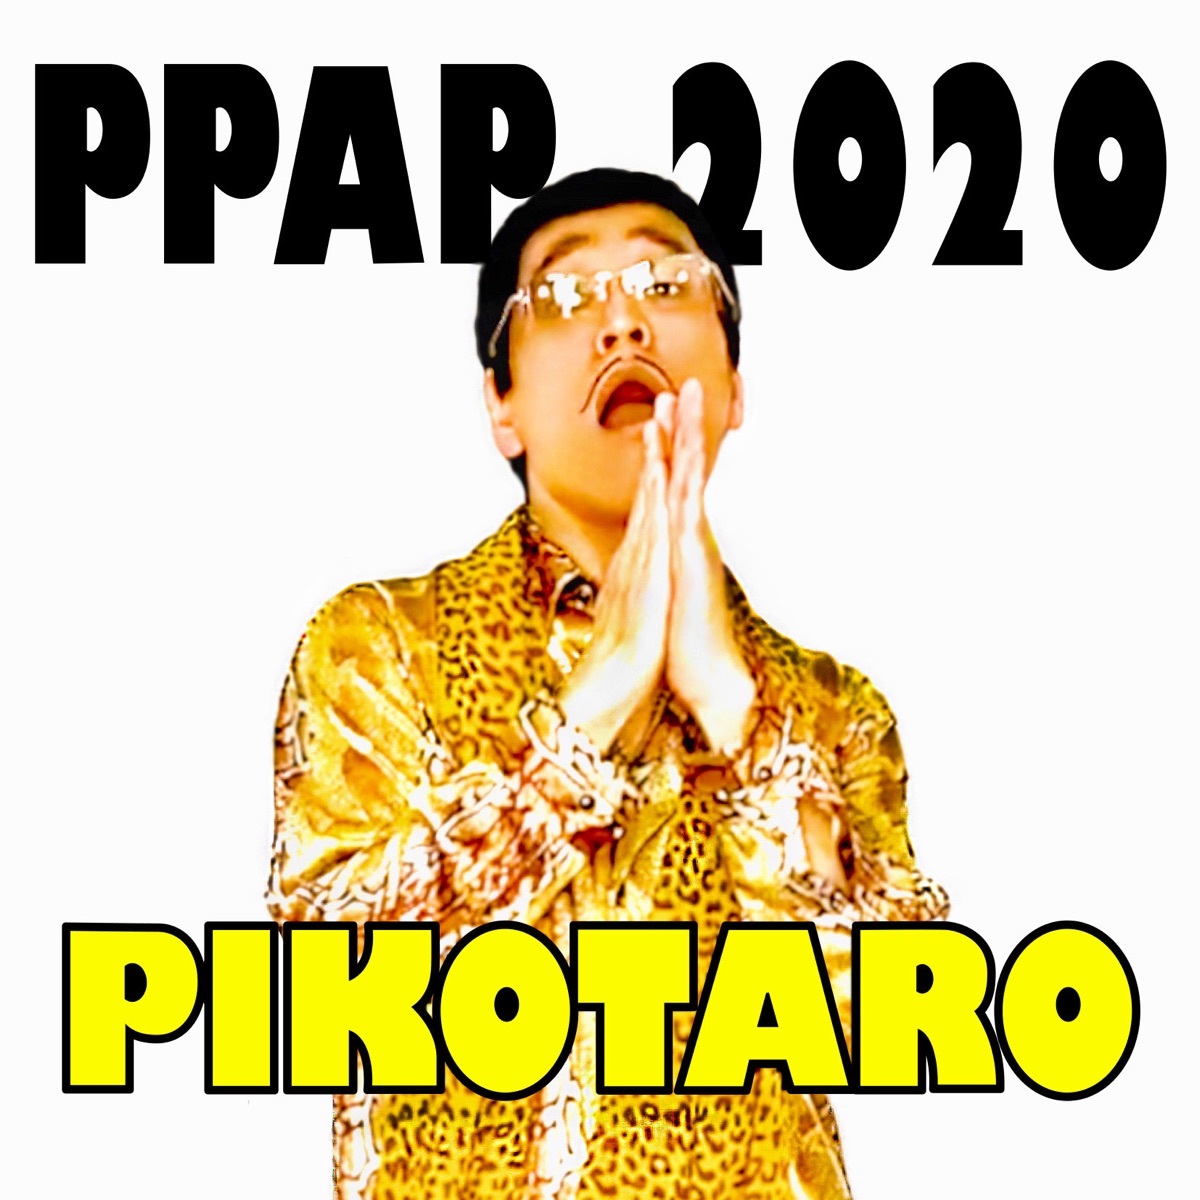 『ピコ太郎 - PPAP-2020-』収録の『PPAP-2020-』ジャケット